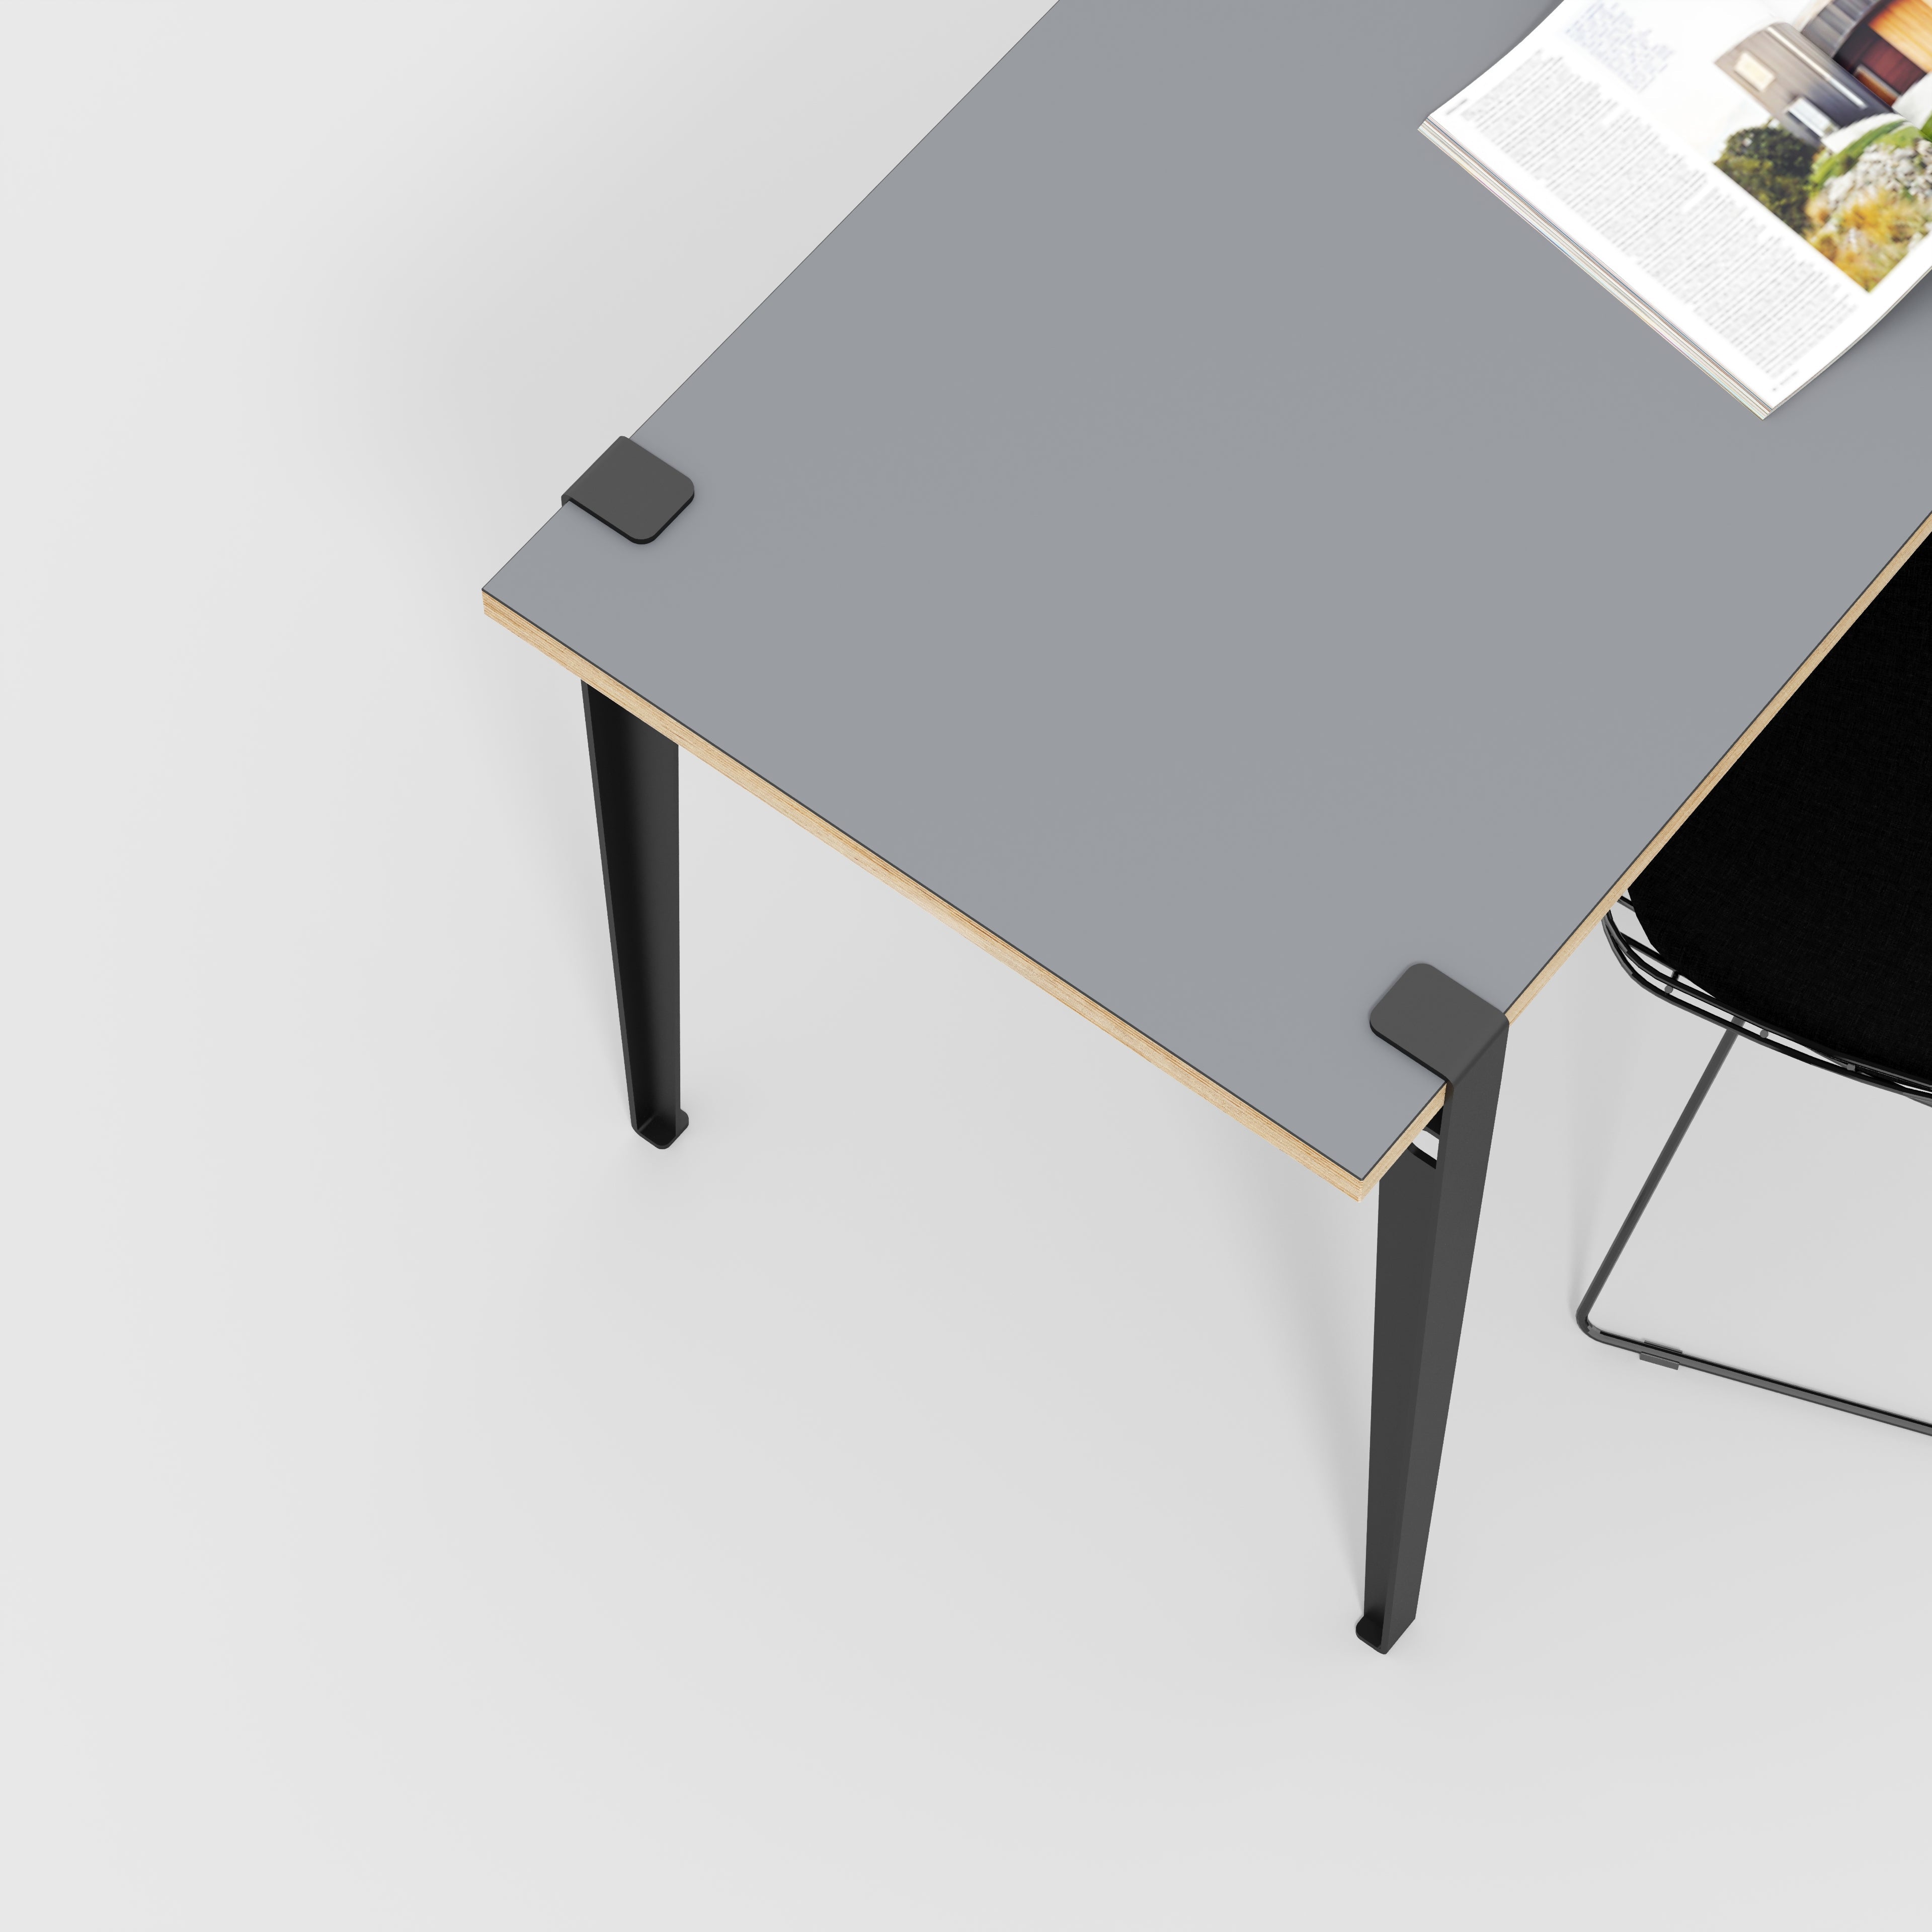 Desk with Black Tiptoe Legs - Formica Tornado Grey - 1600(w) x 800(d) x 750(h)